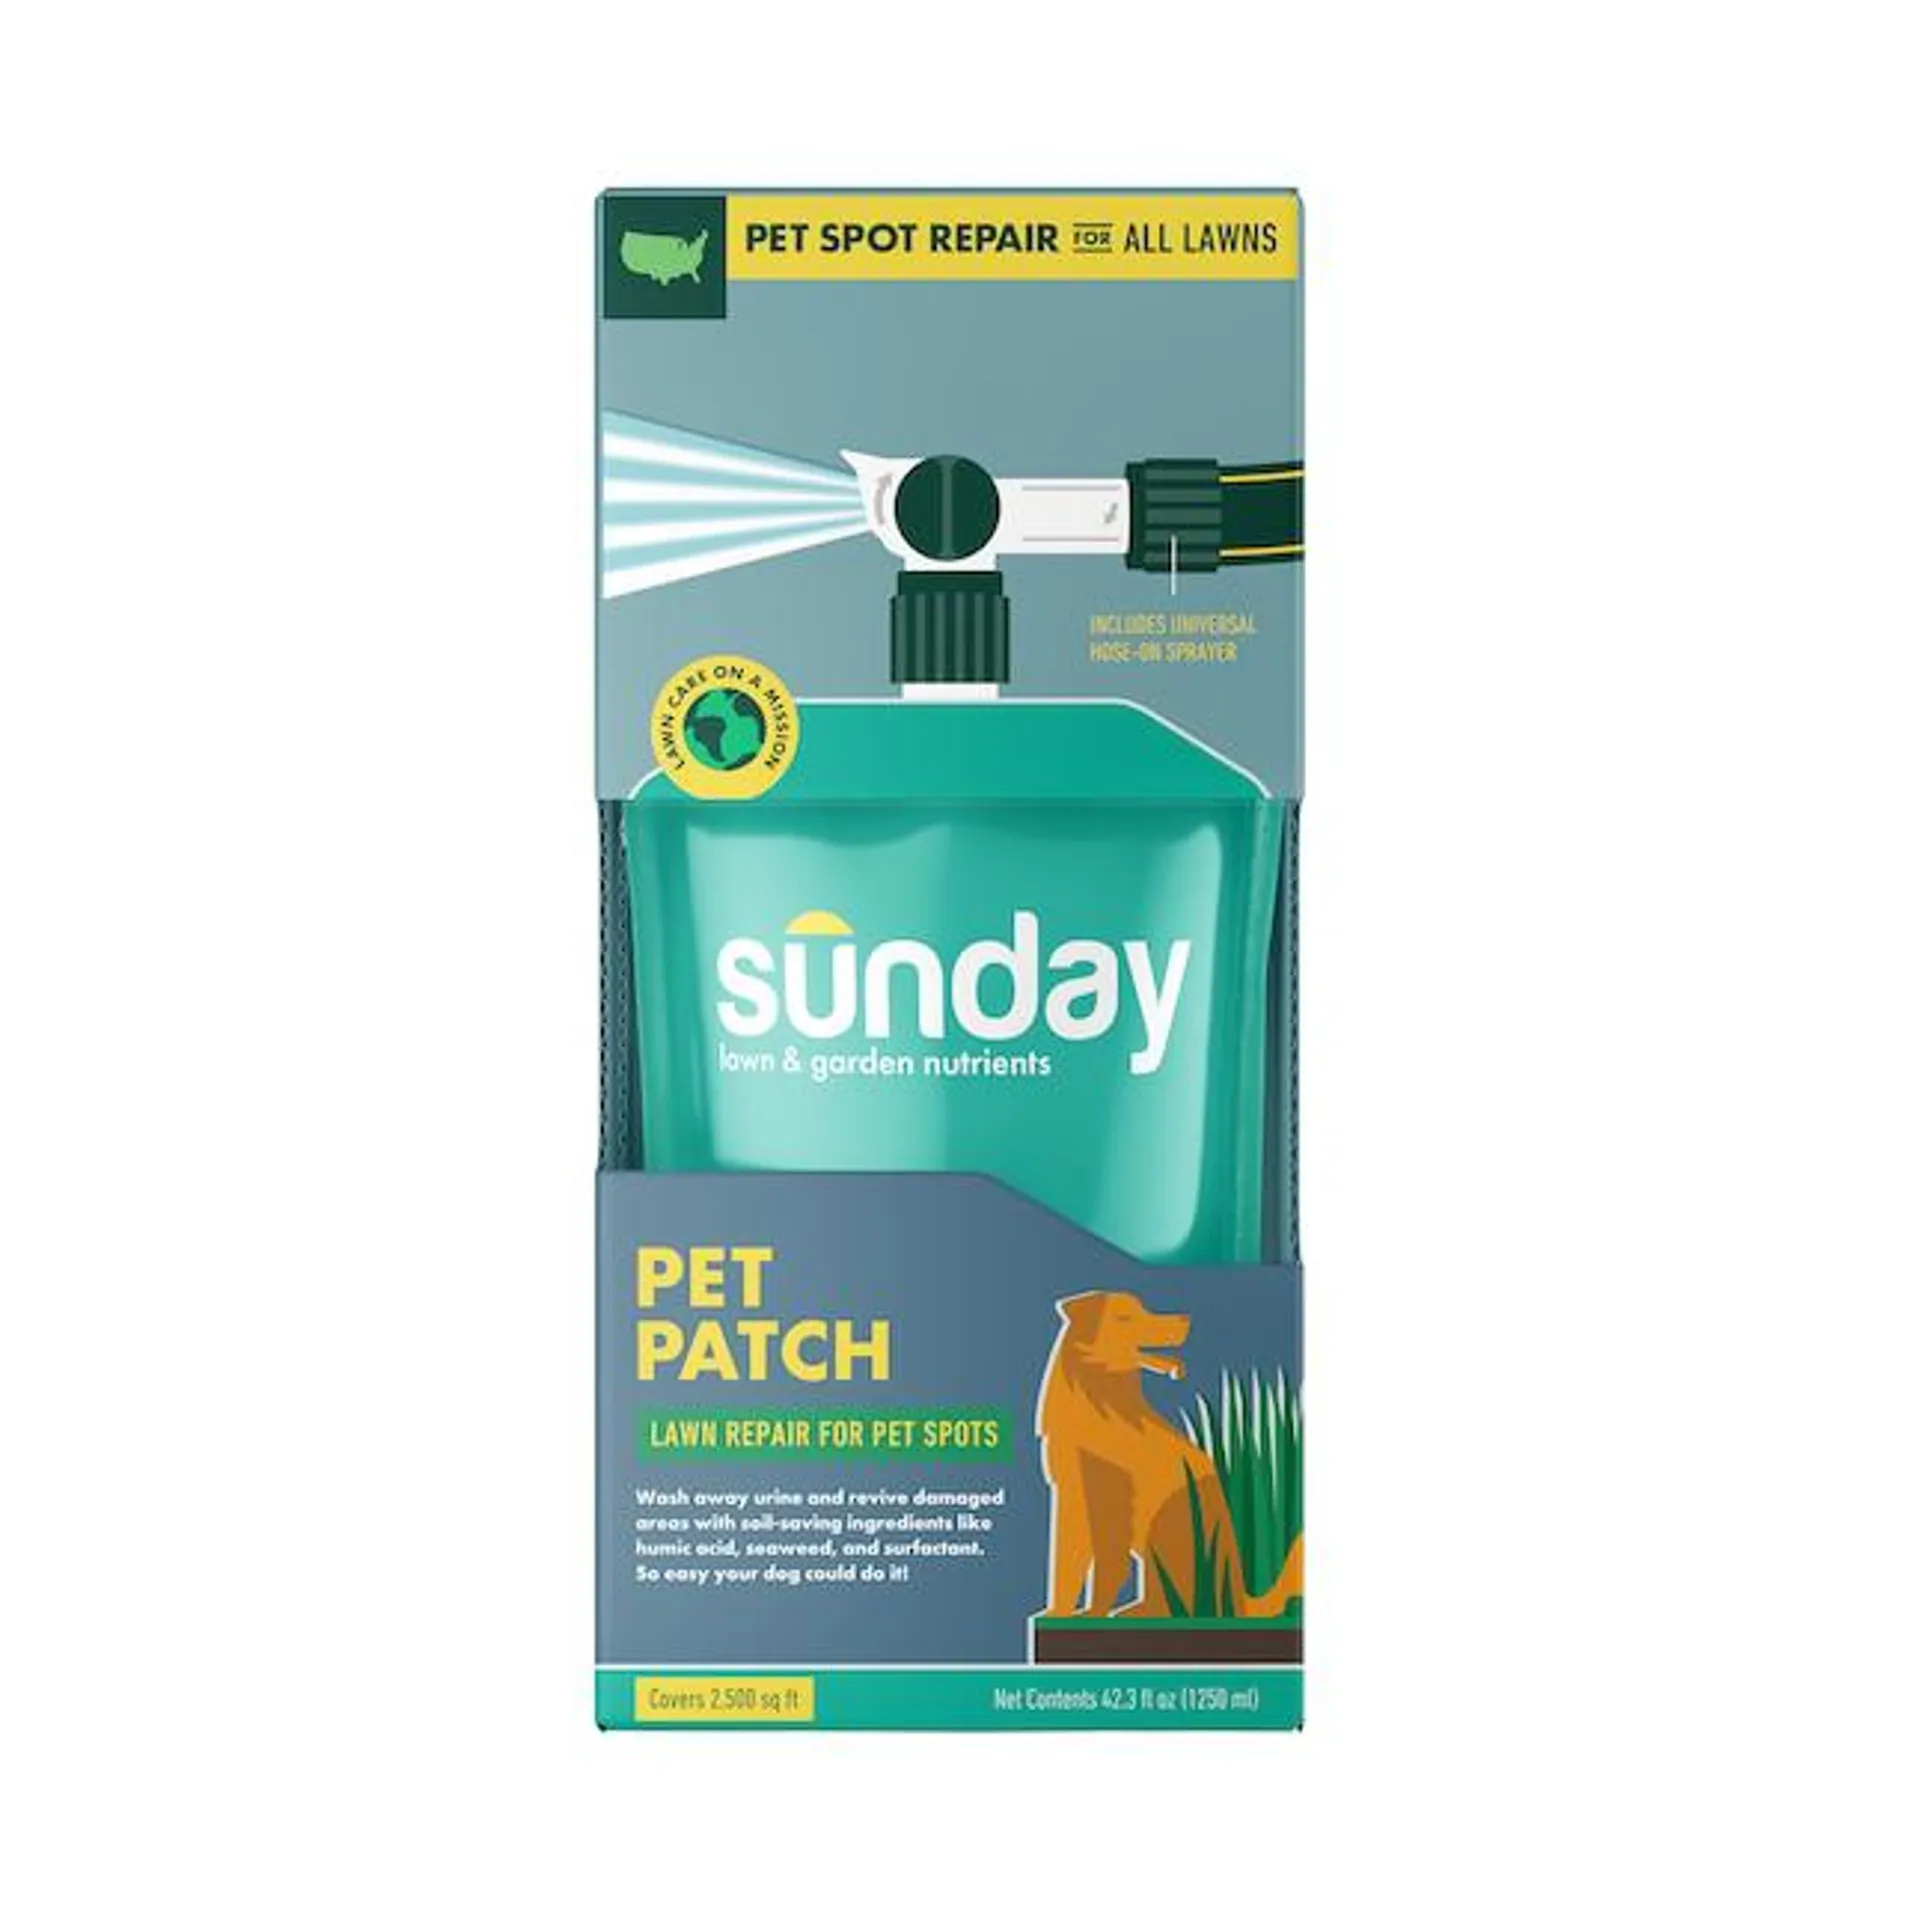 Sunday Pet Patch Lawn Treatment 42.3-oz 0-sq ft 0-0 Natural Fertilizer